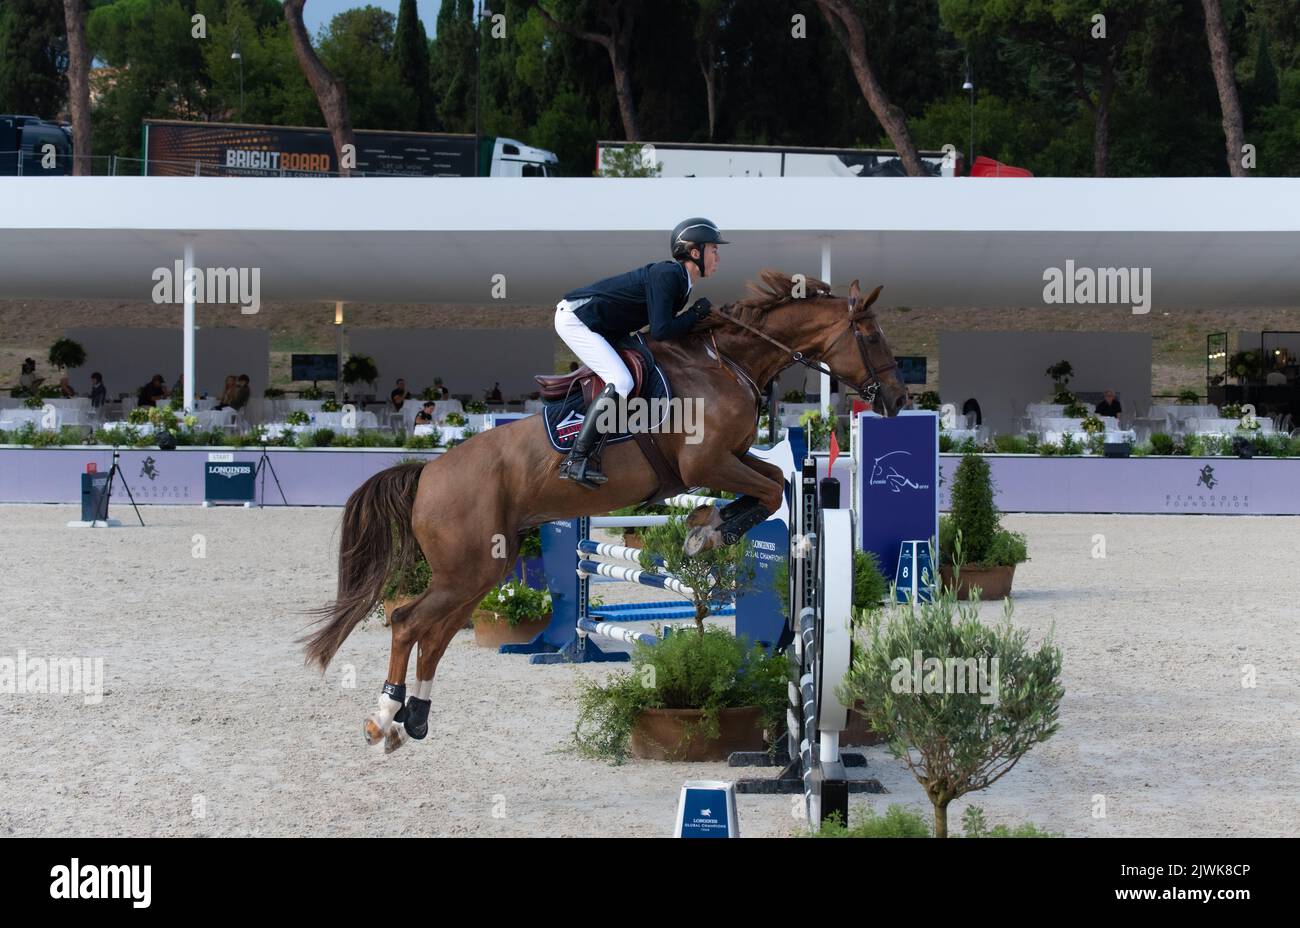 Salto a cavallo durante la competizione equestre. Roma, Italia, 2-4 settembre 2022, Campionato Equestre Jumping Foto Stock